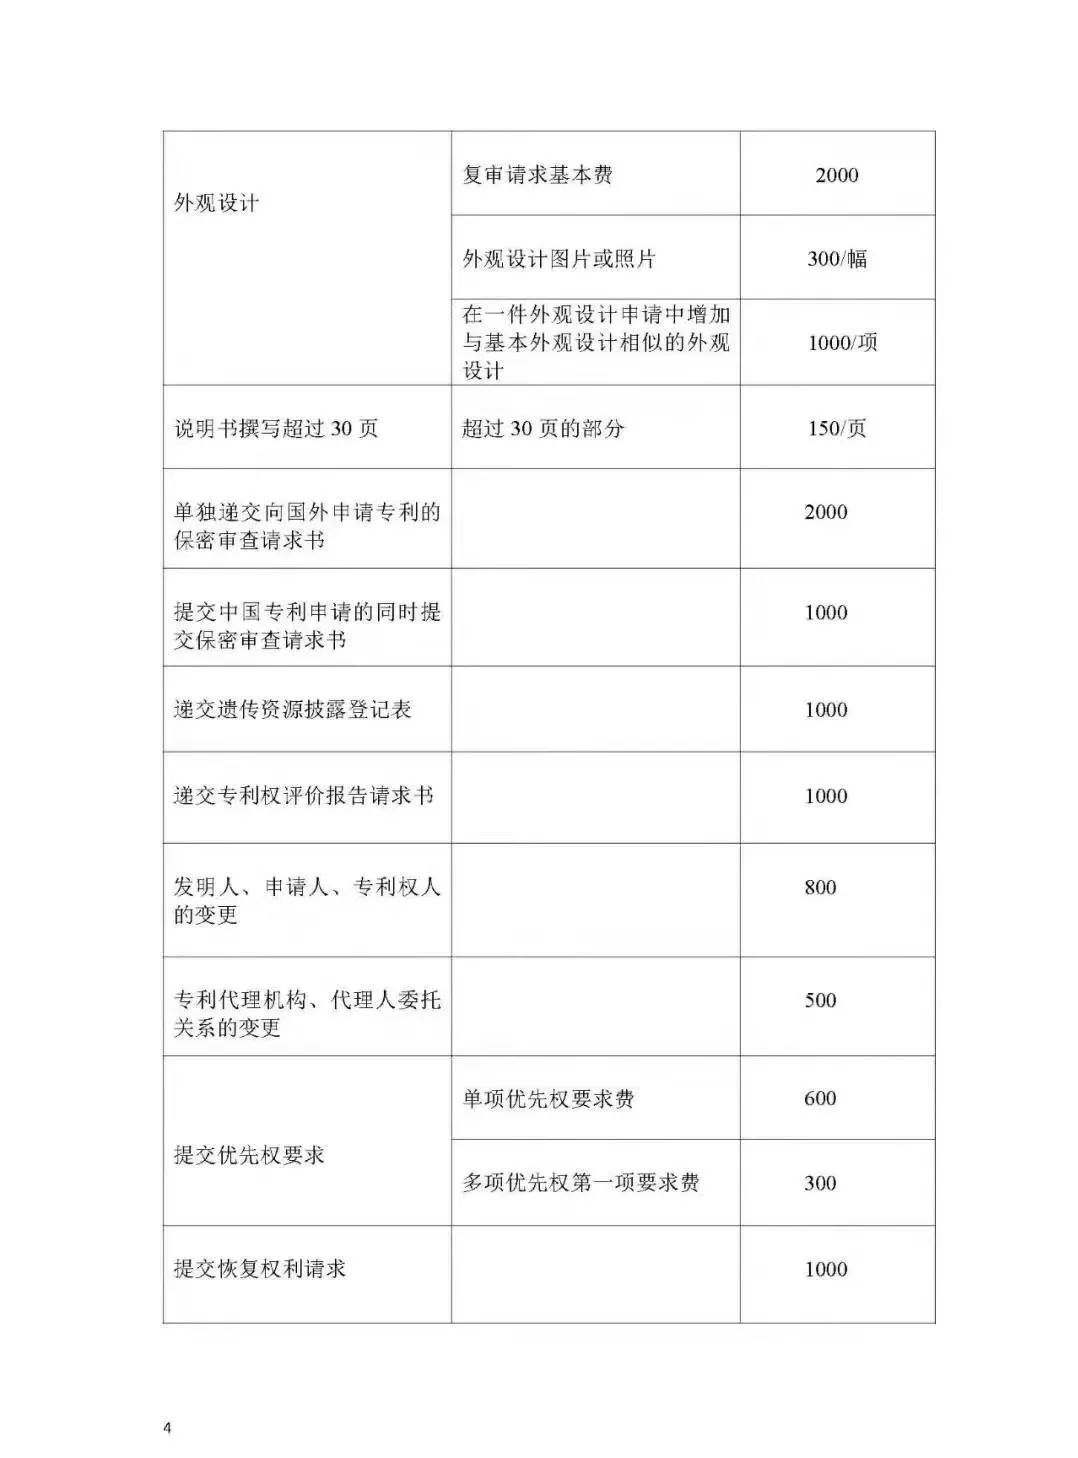 「山东、北京、江苏」三省市专利服务成本价收费标准（公告）！